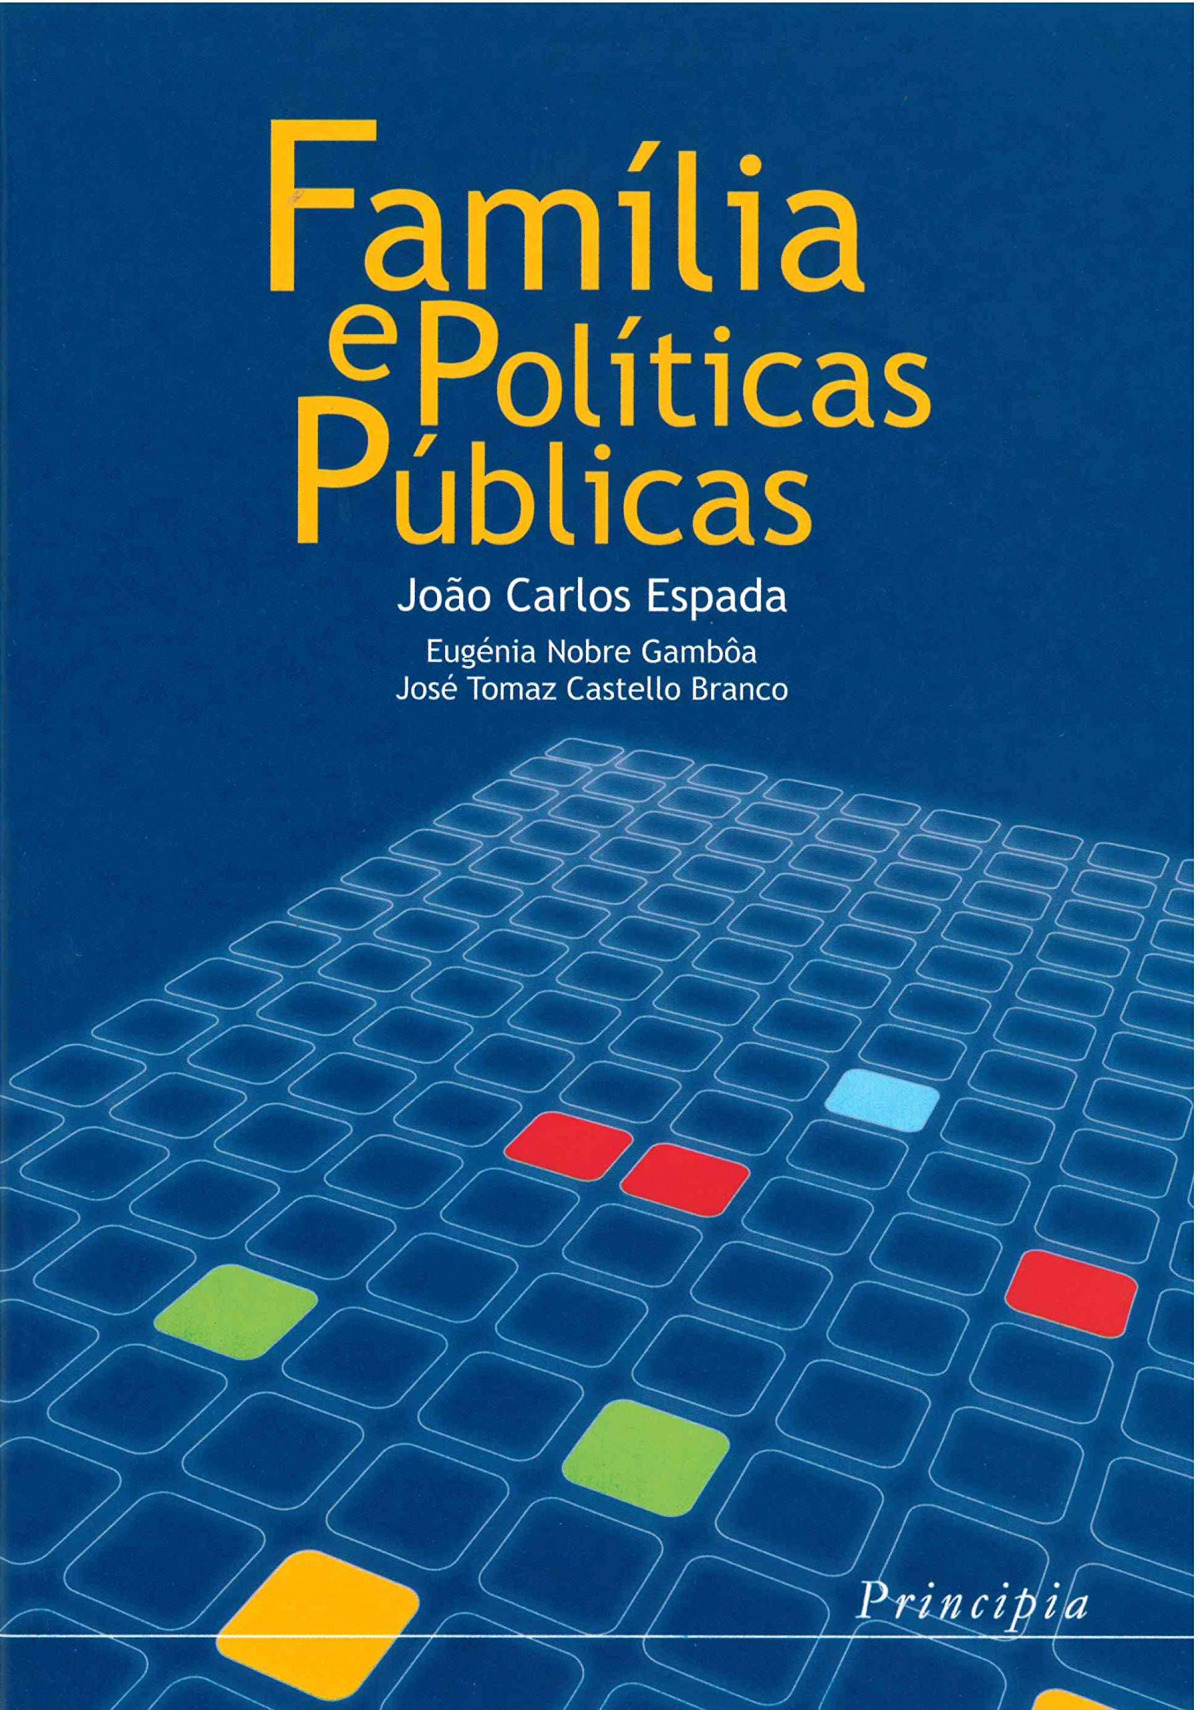 Familia e Politicas Publicas - João Carlos Espada